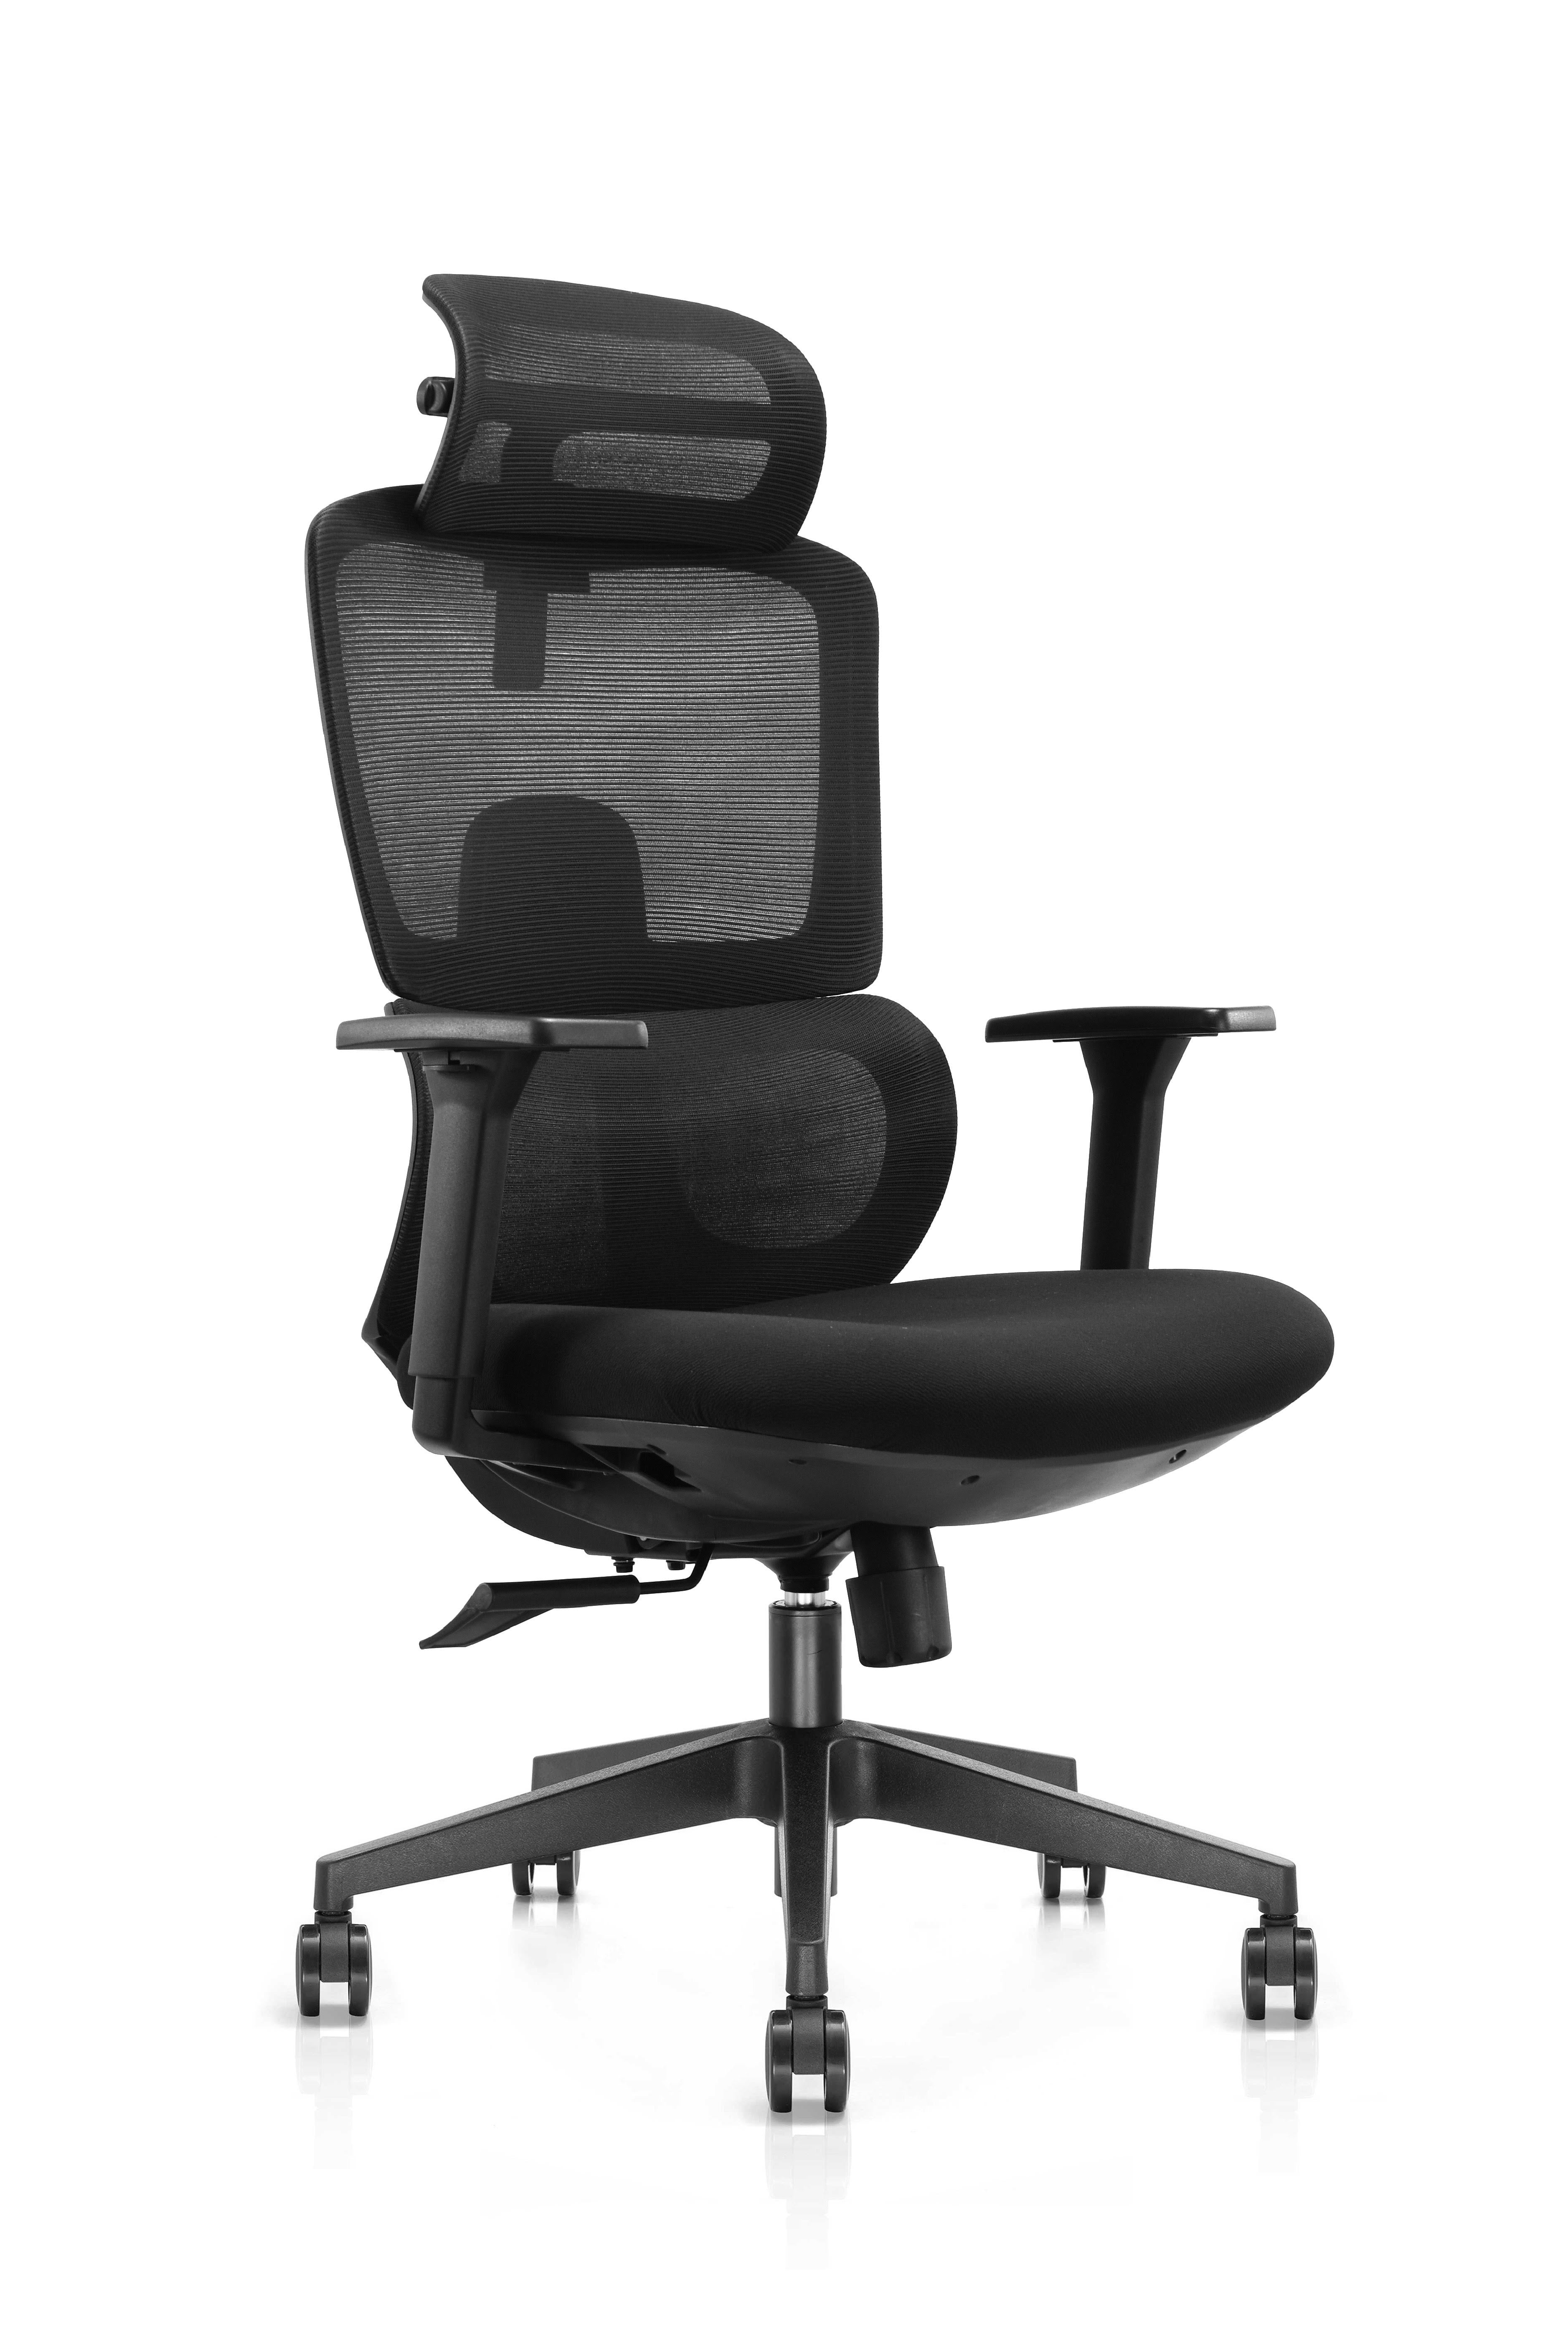 Xavier High Back Executive Cushion Office Chair With Aluminum Base And 3D Armrest- Black